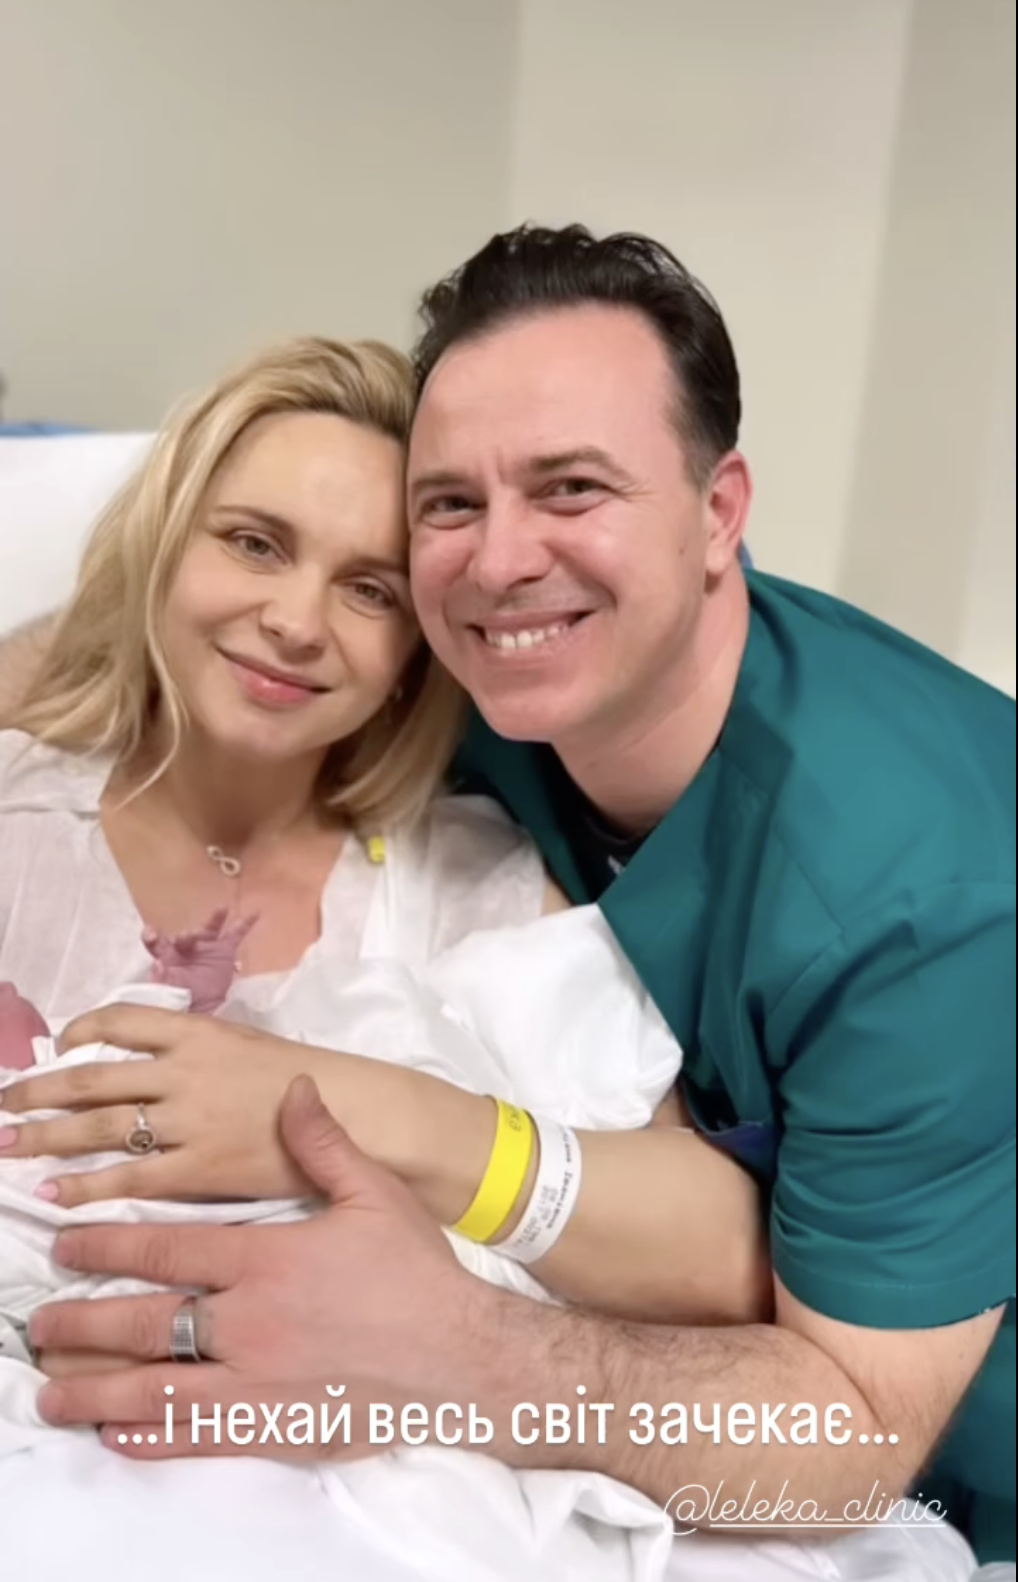 Лилия Ребрик, которая в третий раз стала мамой, умилила видео с новорожденной дочерью